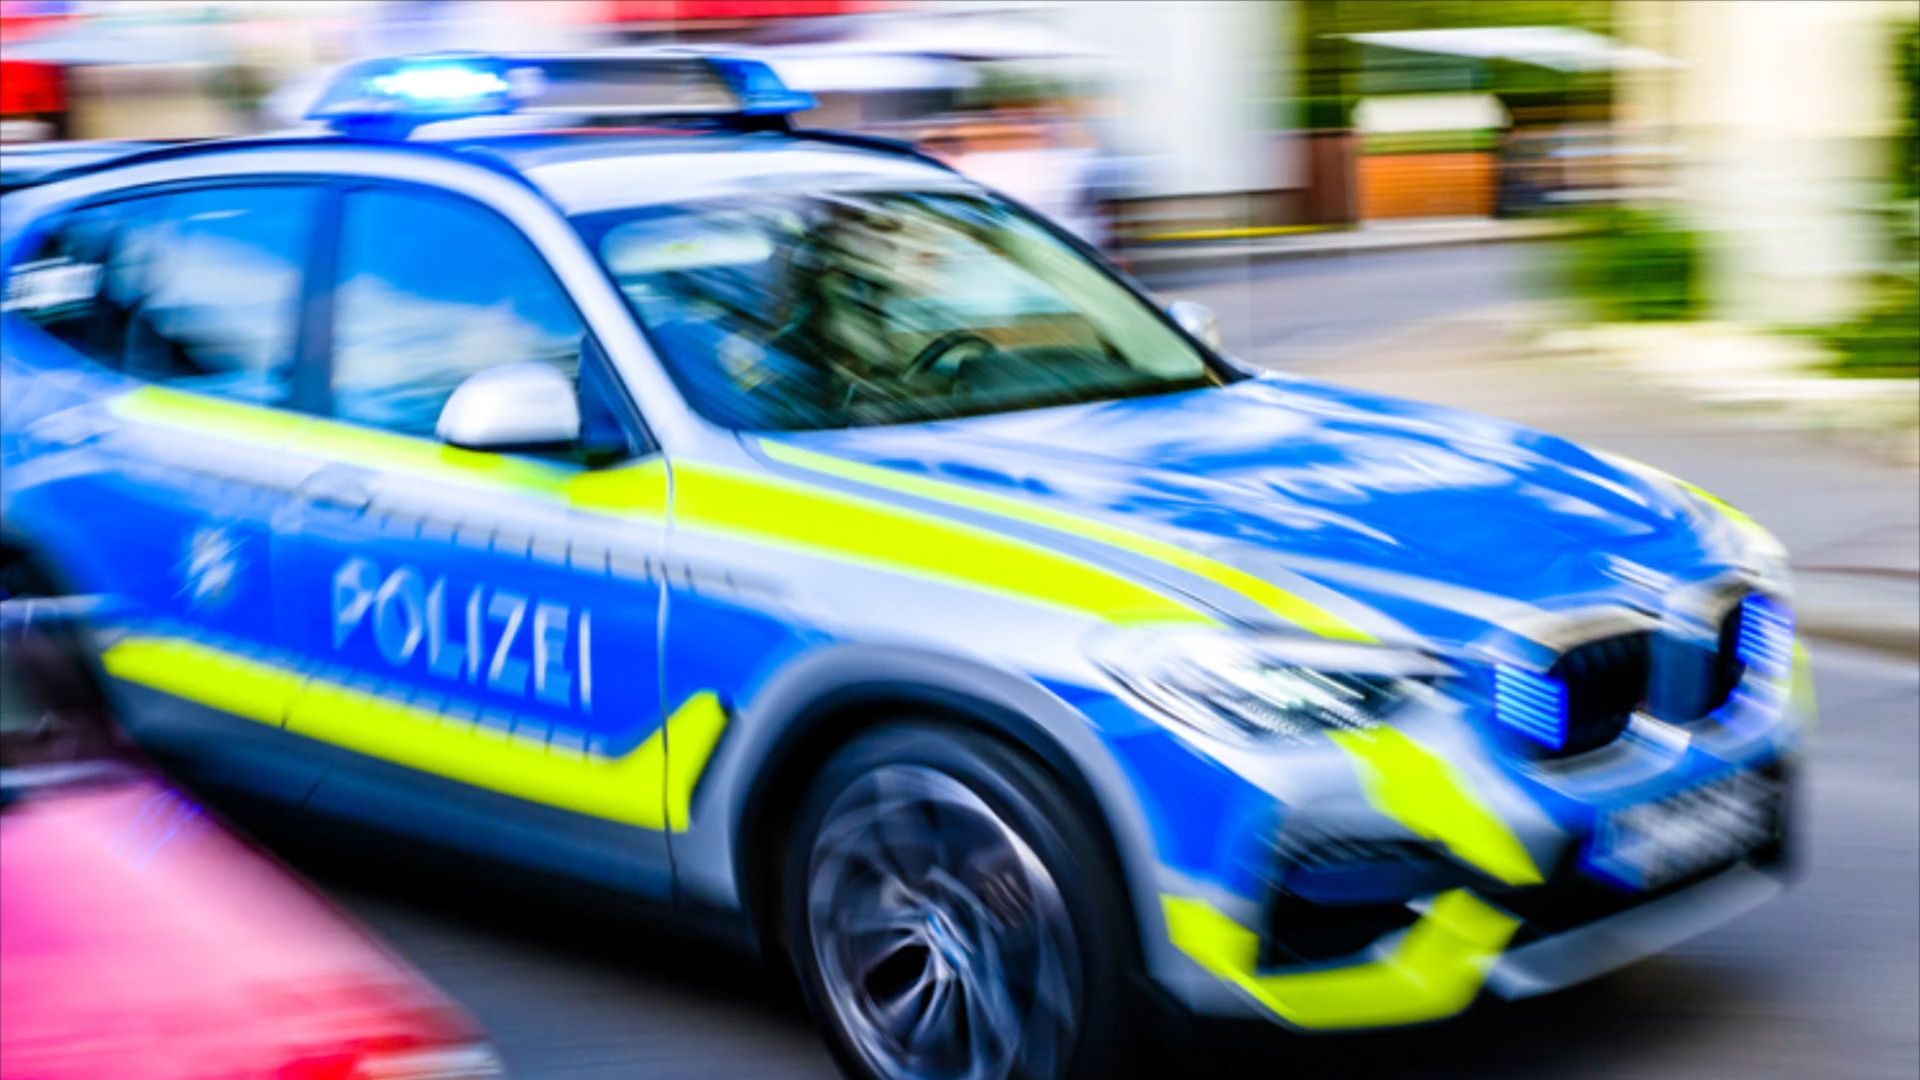 Erding bei München: Mann attackiert drei Männer mit Messer